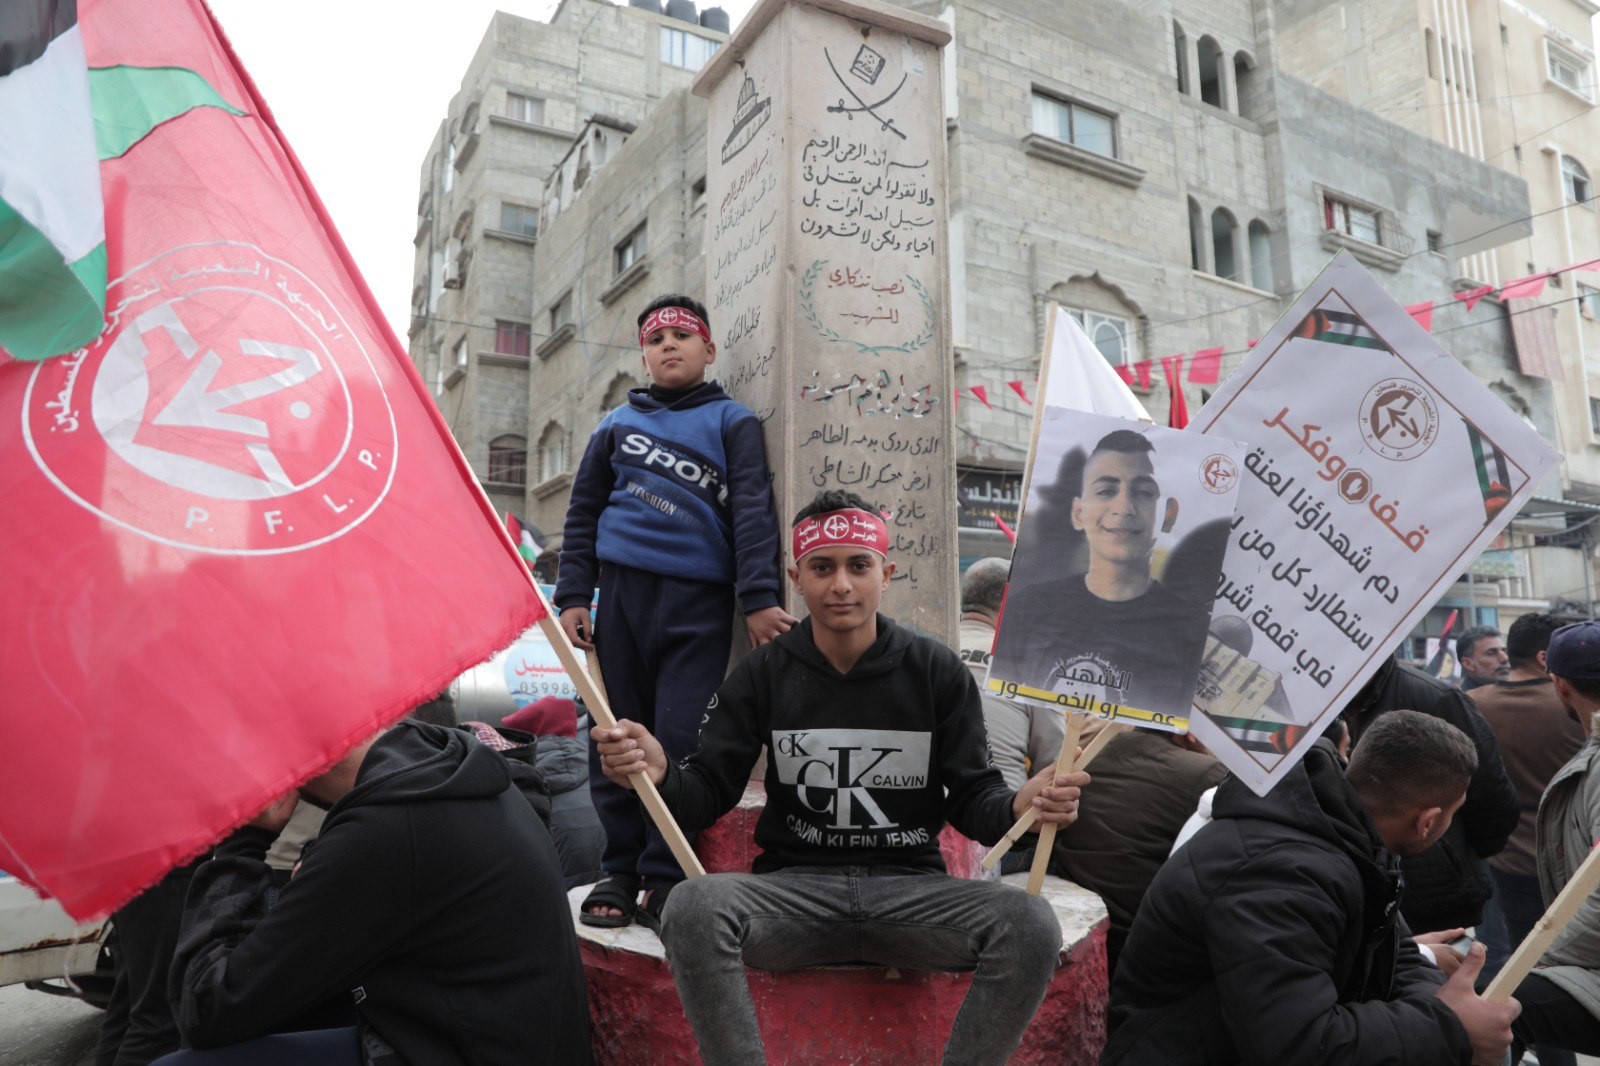 الجبهة الشعبيّة تنظّم مسيرة جماهيريّة ومهرجانًا حاشدًا في مخيم الشاطئ غرب محافظة غزّة على شرف  يوم الشهيد الجبهاوي 1.jpg